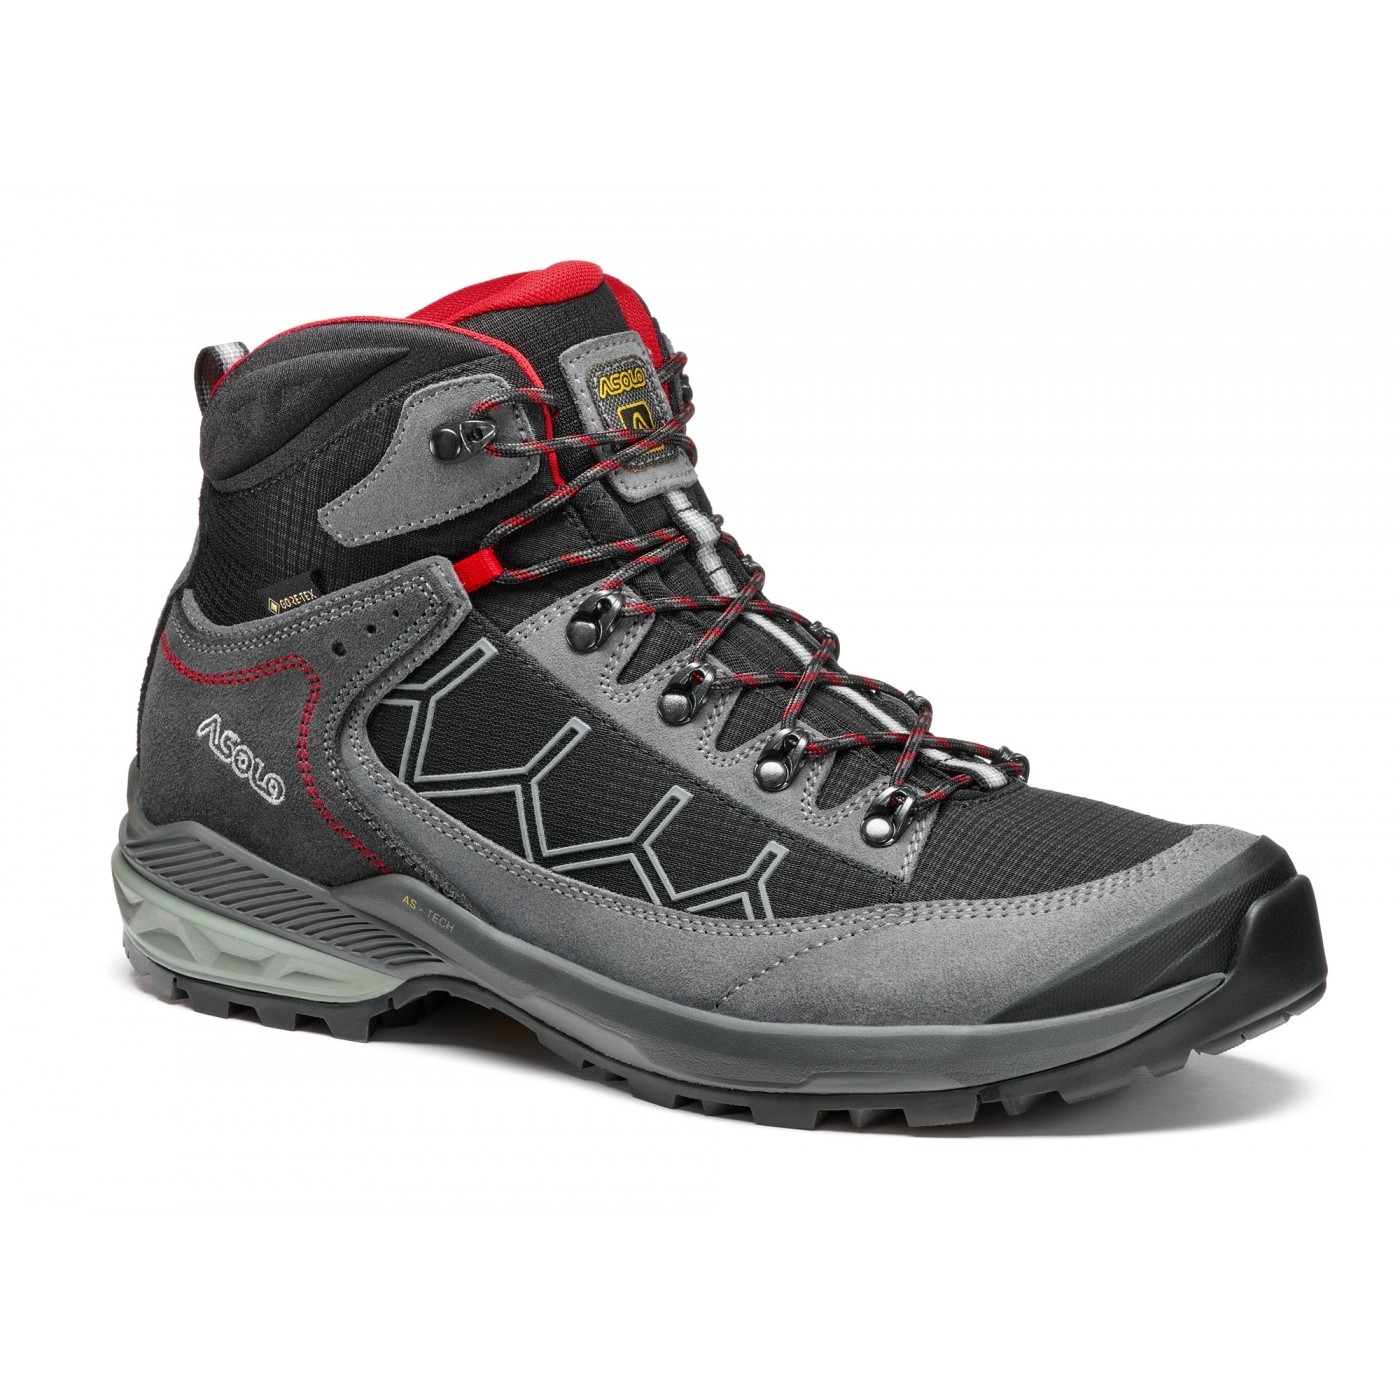 Picture of Asolo Falcon Evo GV Hiking Boots - grey/black